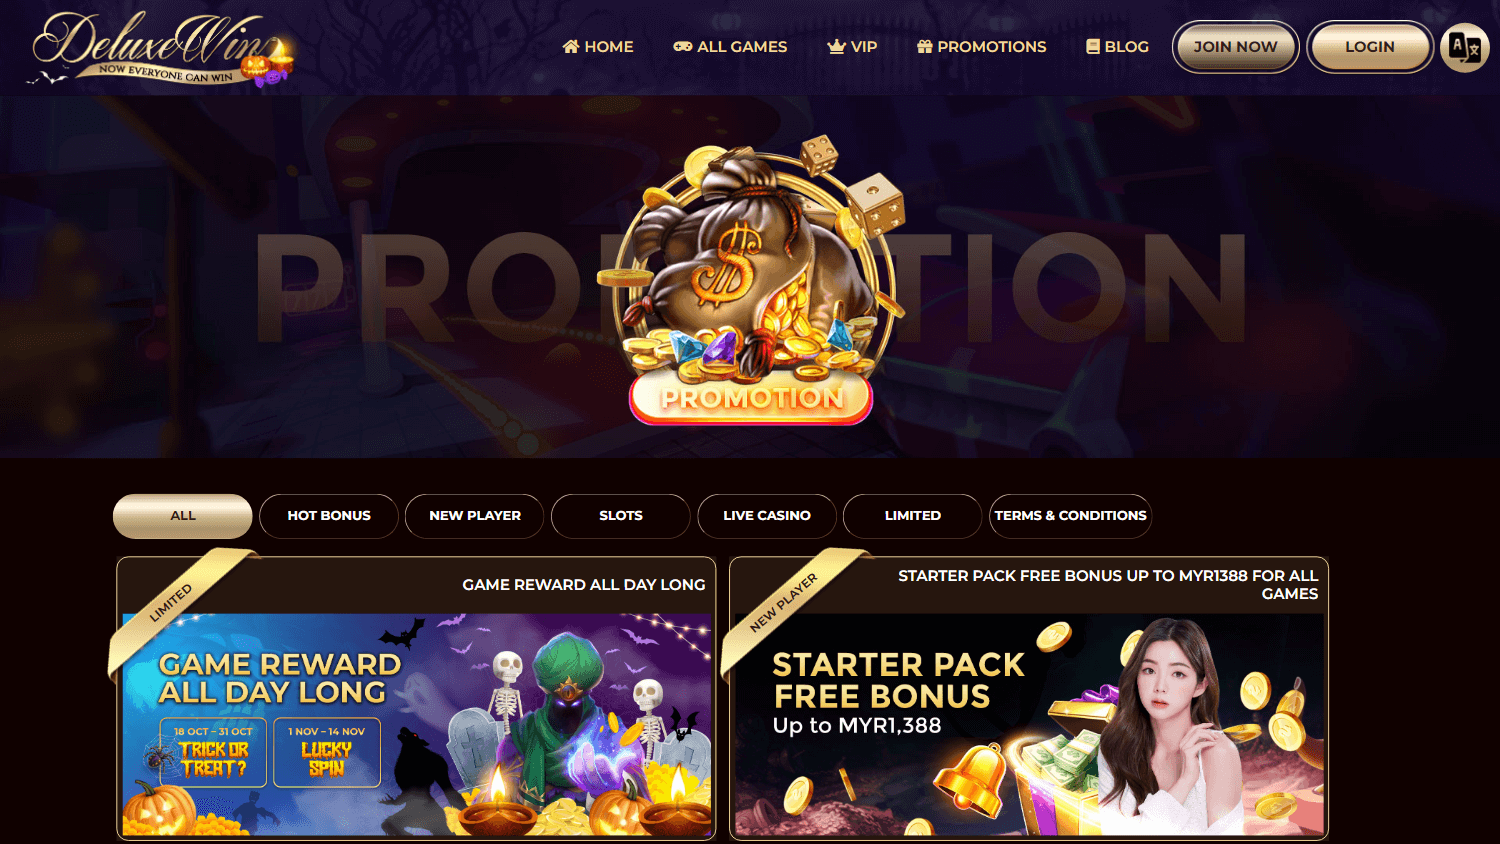 deluxe_win_casino_promotions_desktop